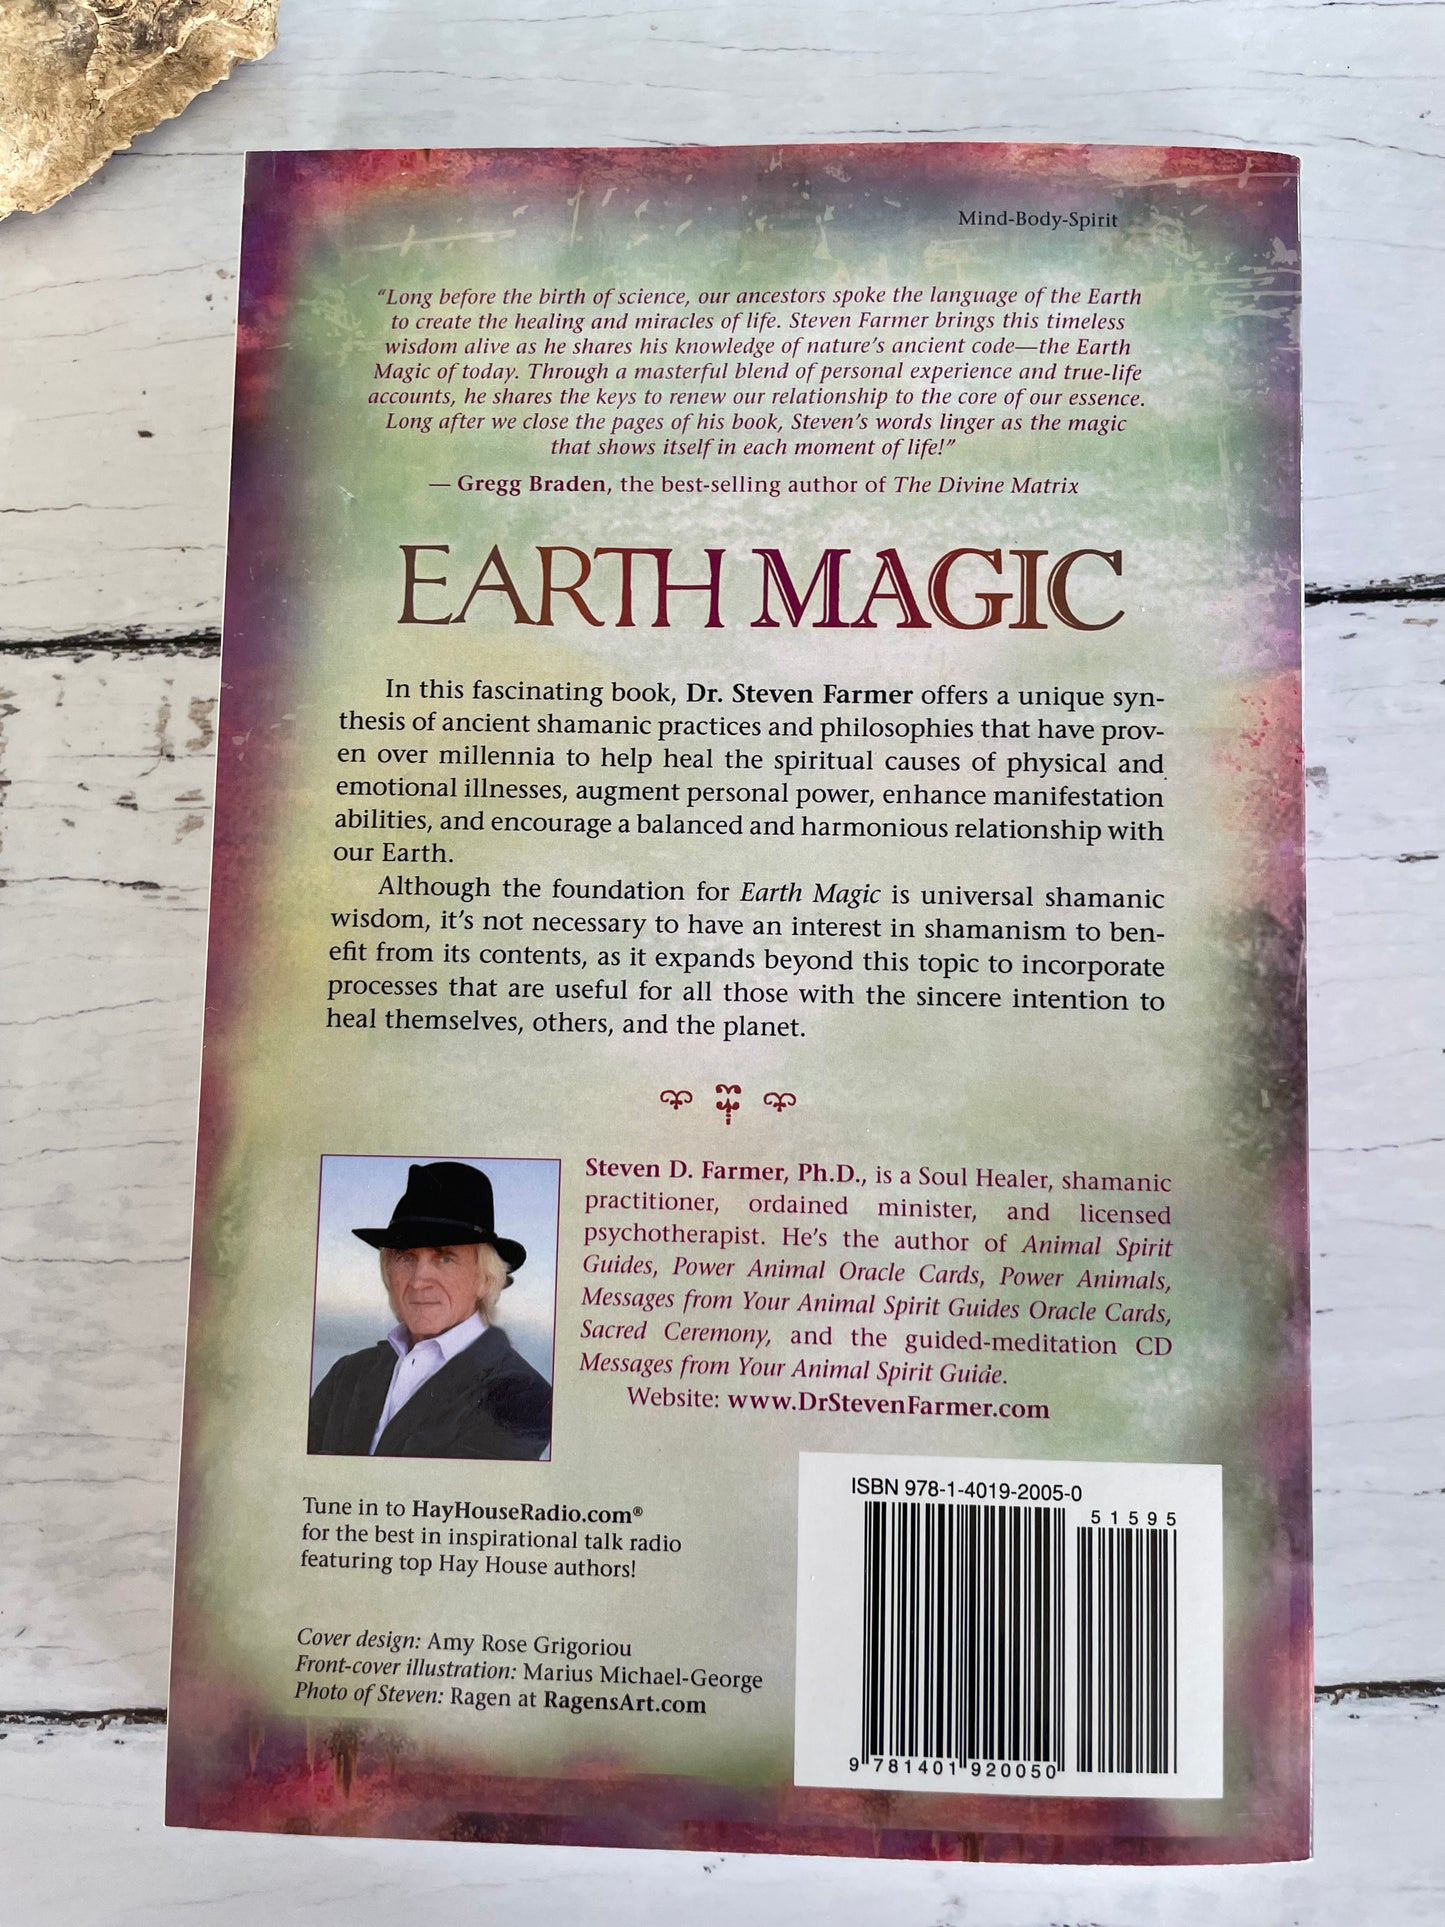 Earth Magic